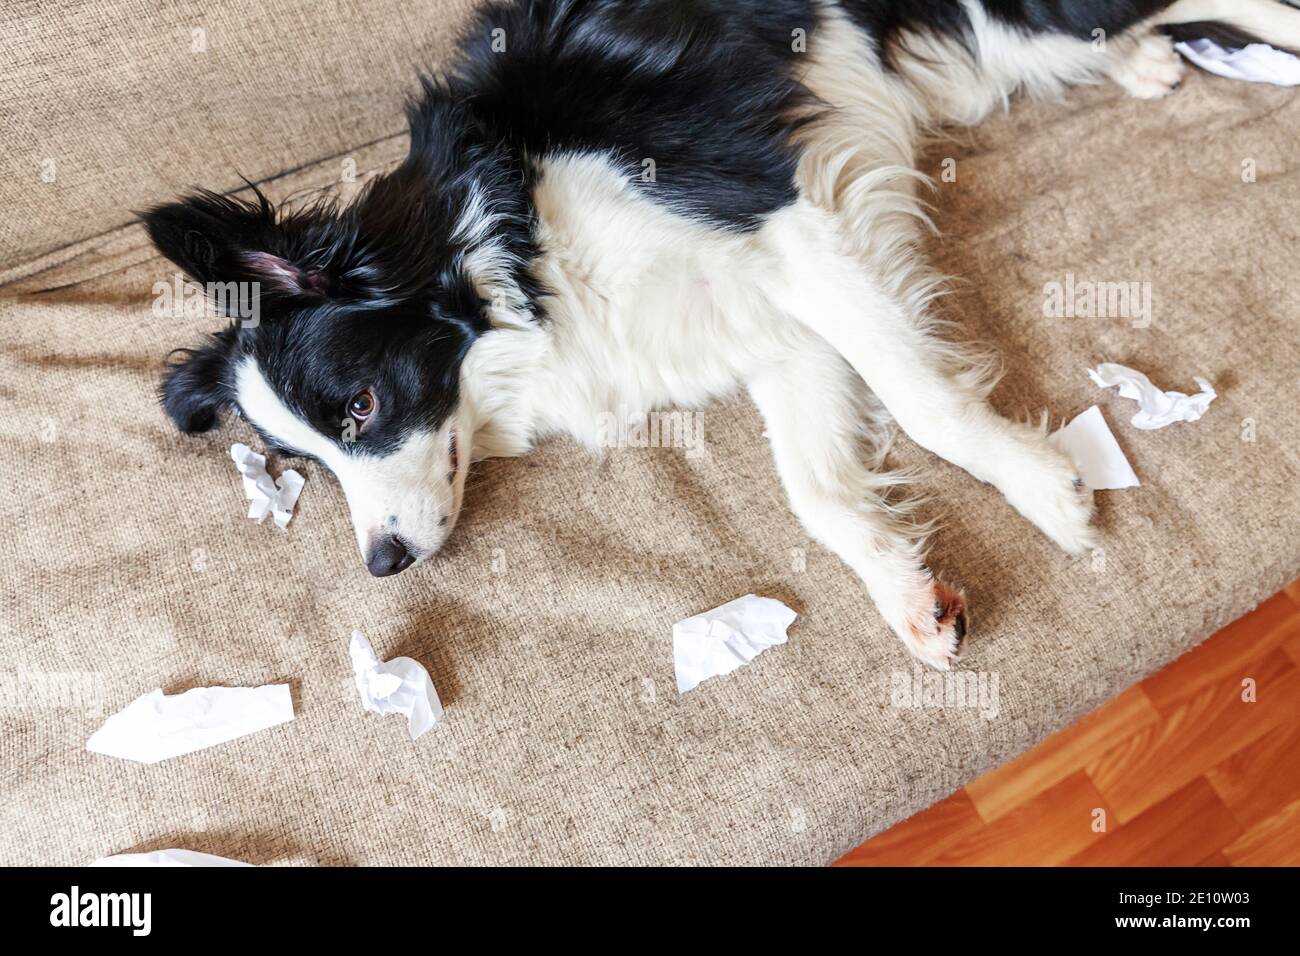 Naughty chien joueur bordure de chien de chiot collie après avoir mal piquant papier toilette couché sur le canapé à la maison. Coupable et détruit la salle de séjour. Dégâts désordonnés Banque D'Images